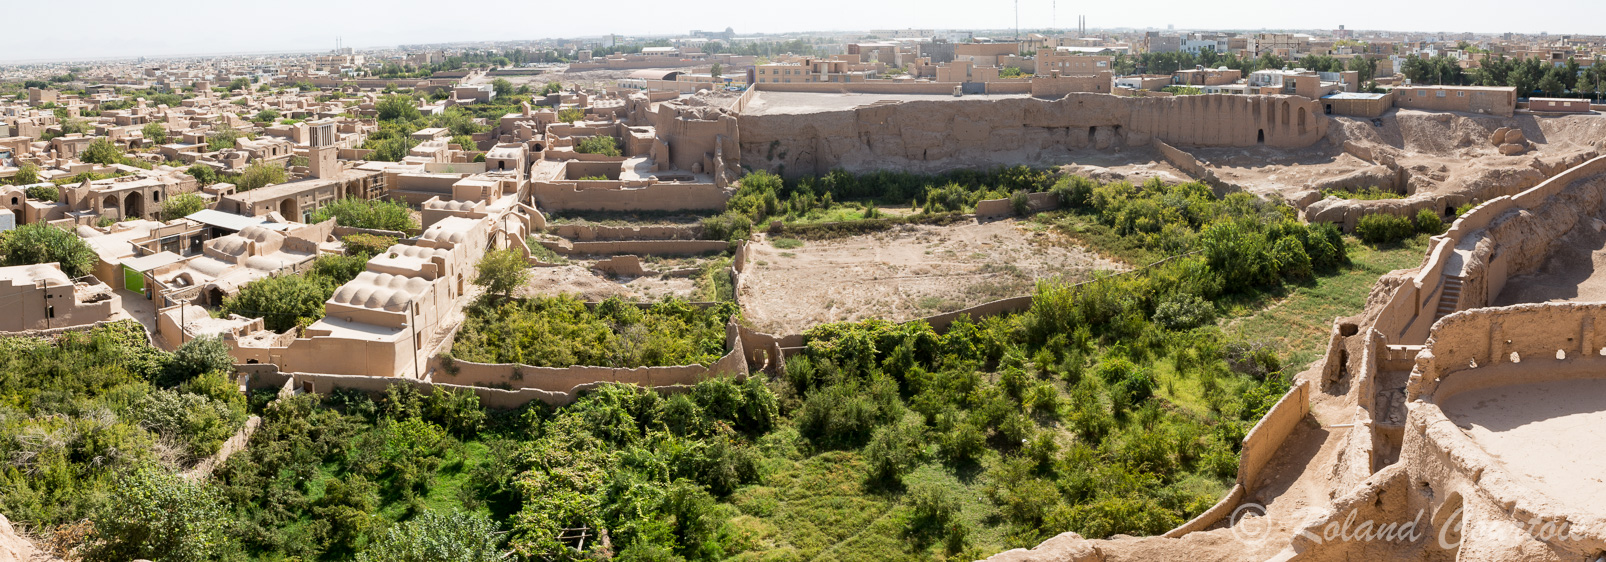 Meybod conserve une citadelle d’époque islamique, avec des restes de fortifications surplombant de vieux quartiers.